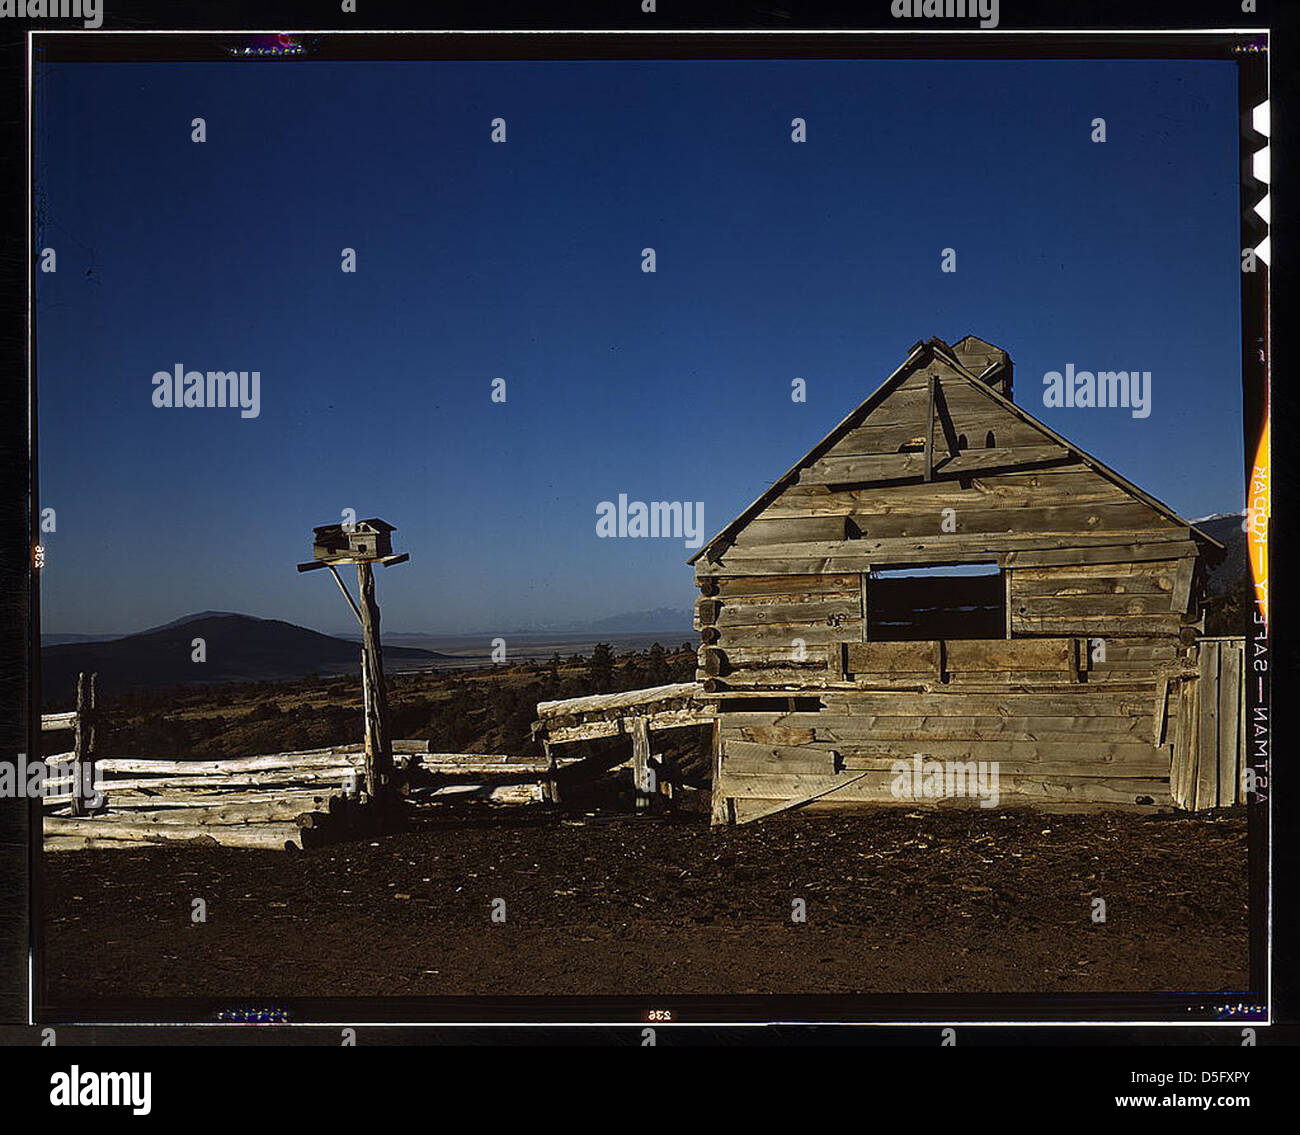 Villaggio di La Alama, vicino a questa, Taos Co., N[ew] Mex[ico] (LOC) Foto Stock